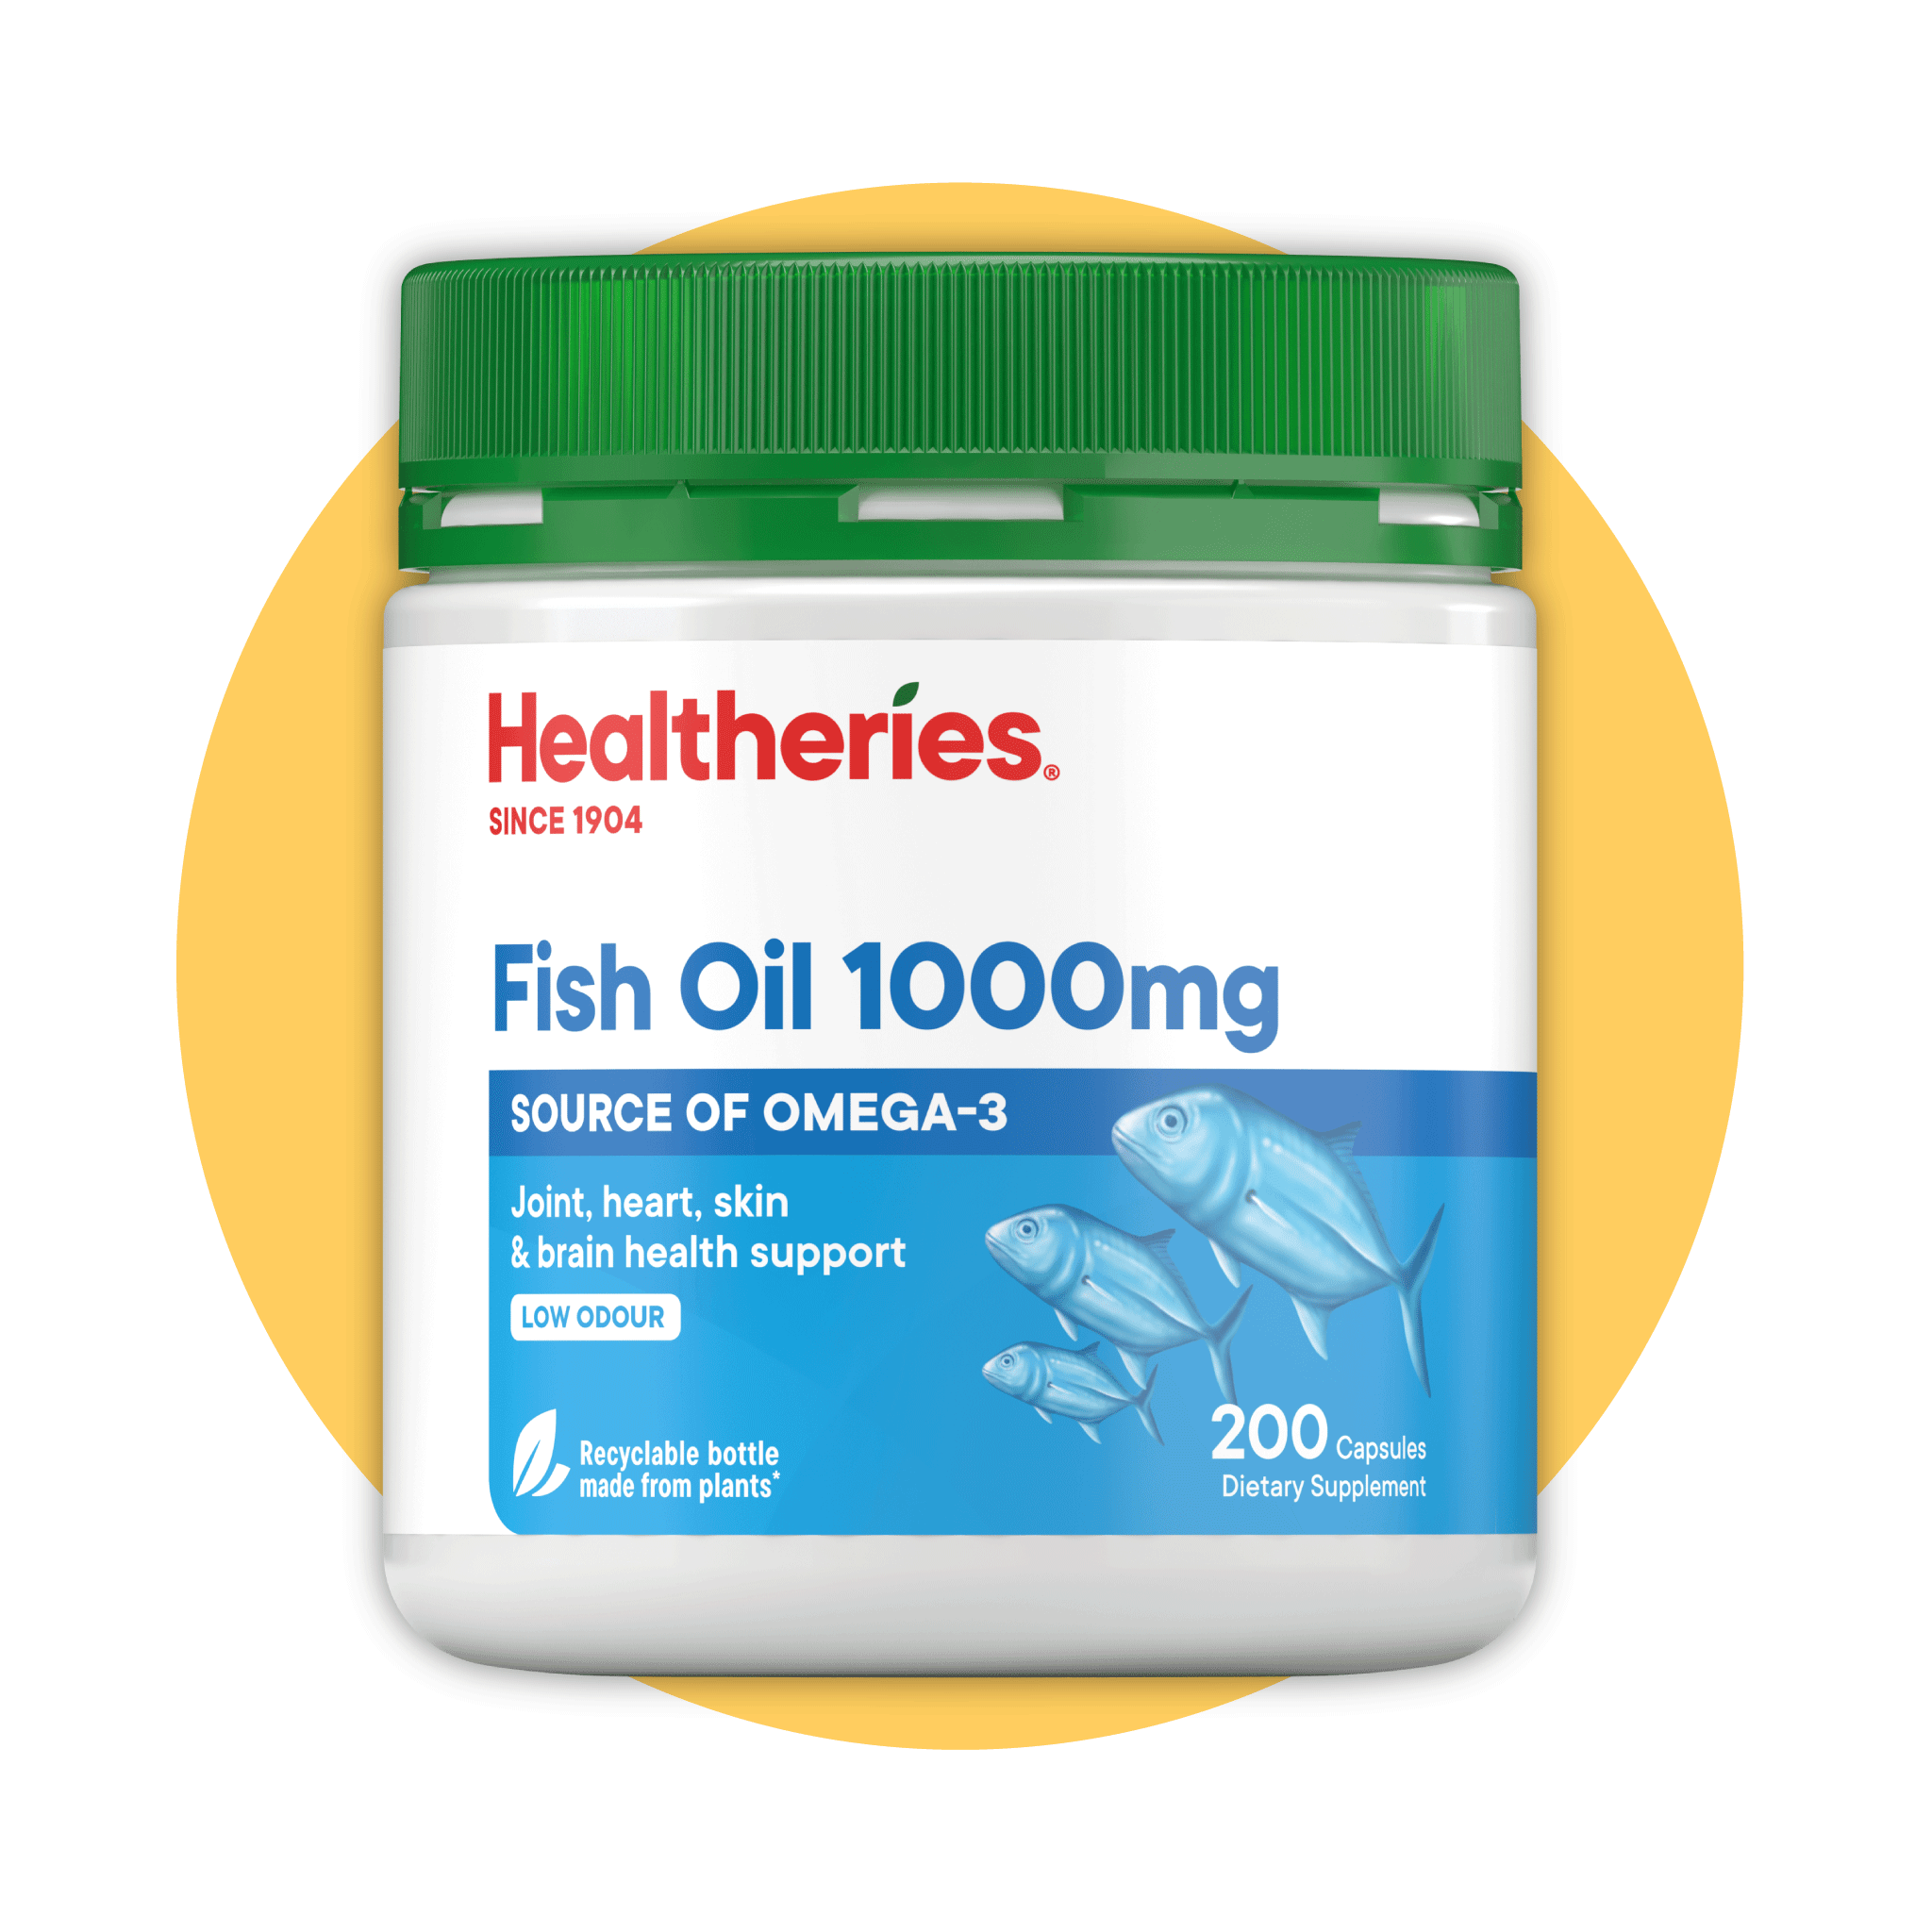 (HAStaff) Healtheries Fish Oil 1000mg 200s - Healtheries Hong Kong